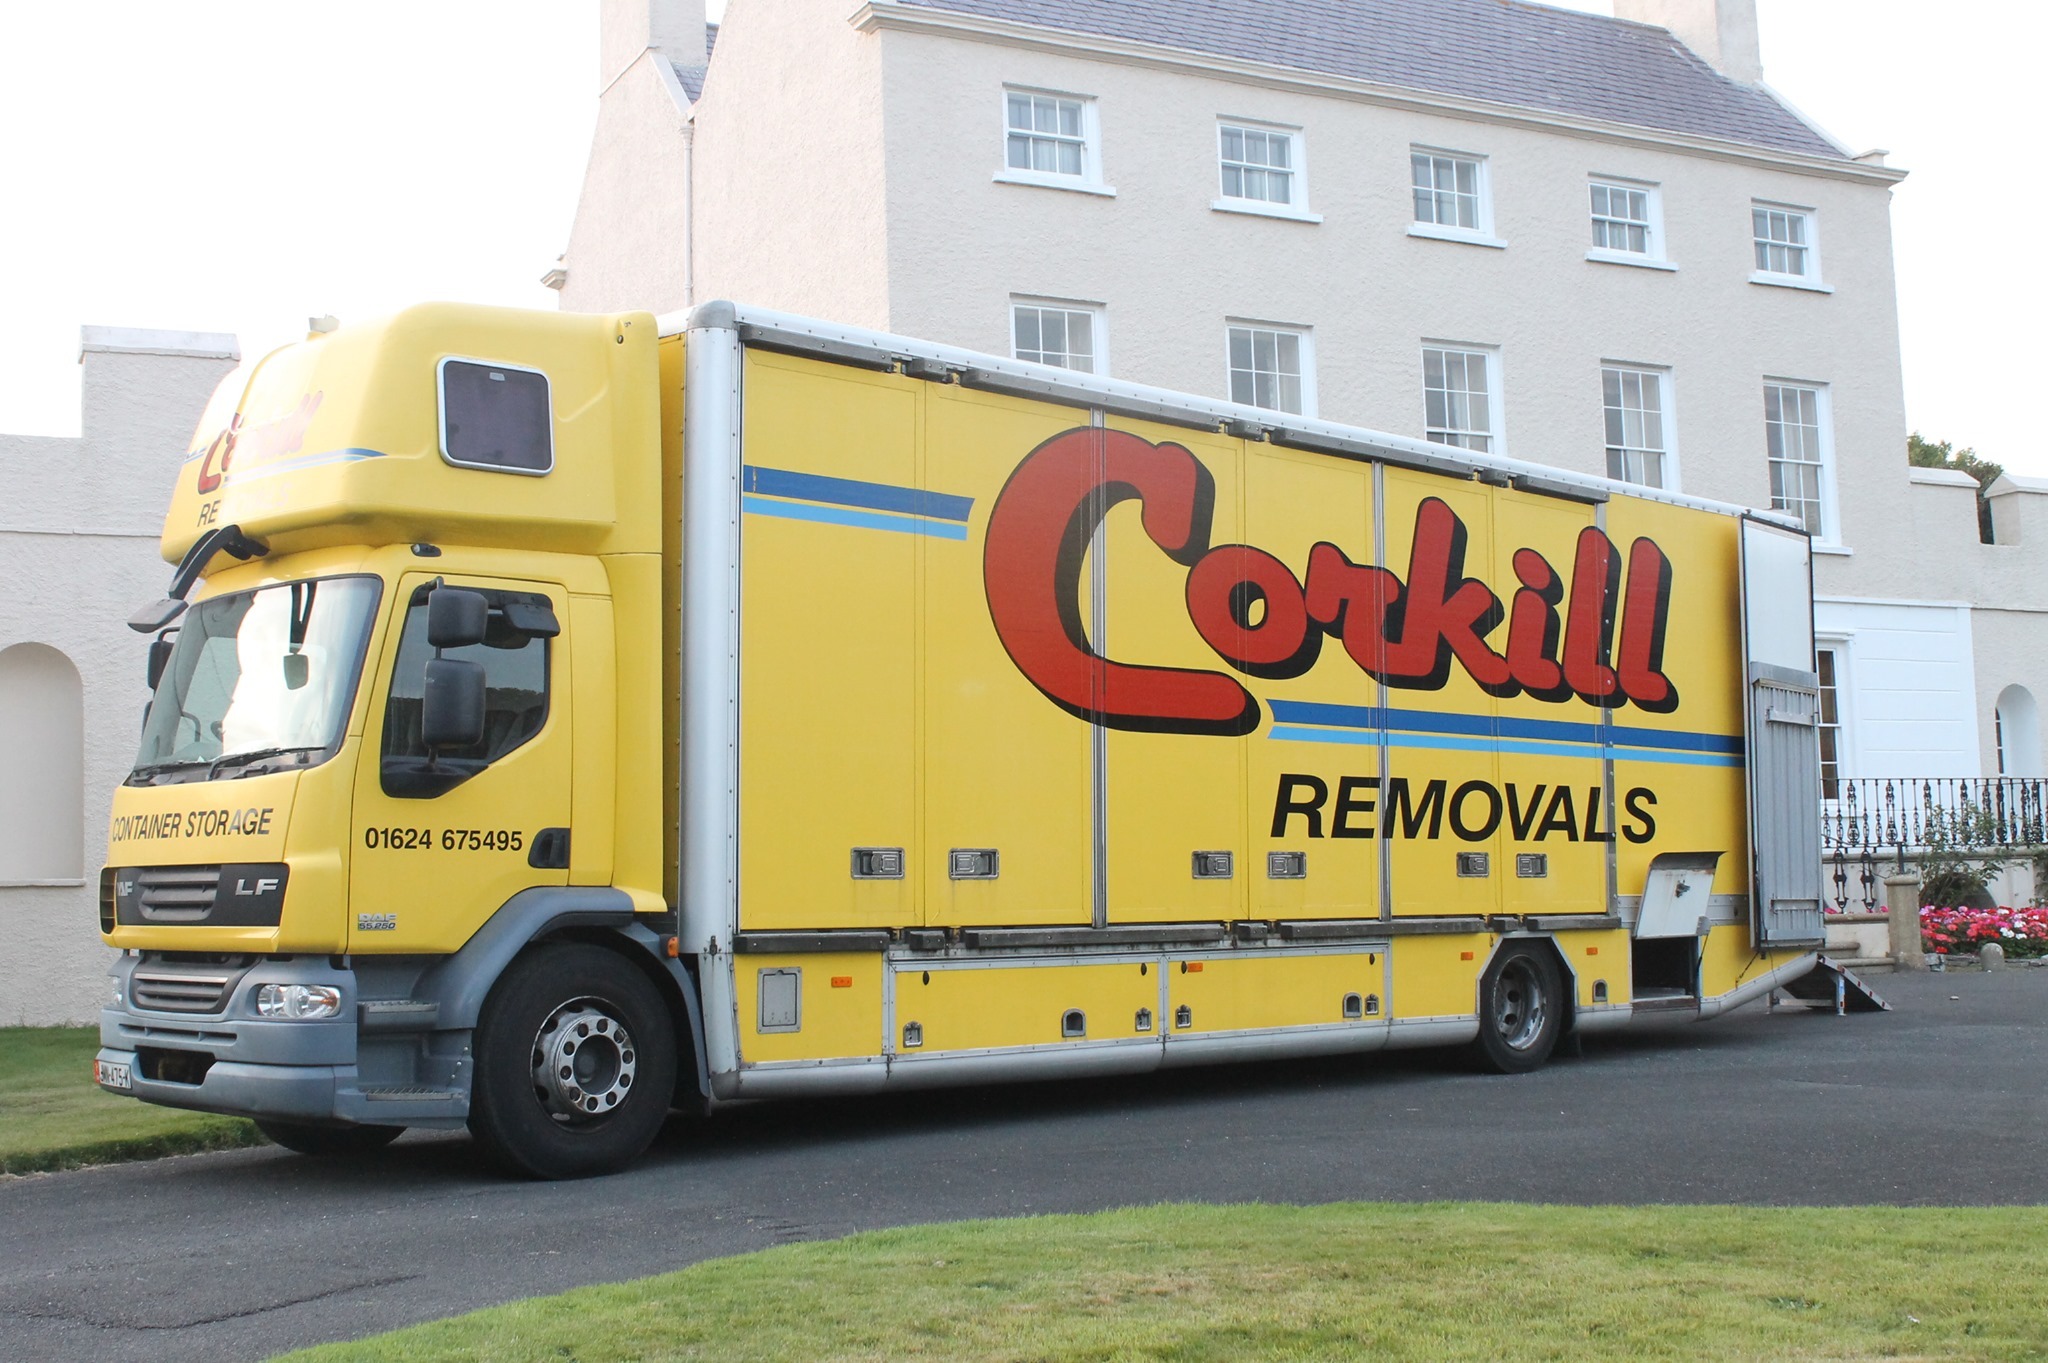 Corkill Removals